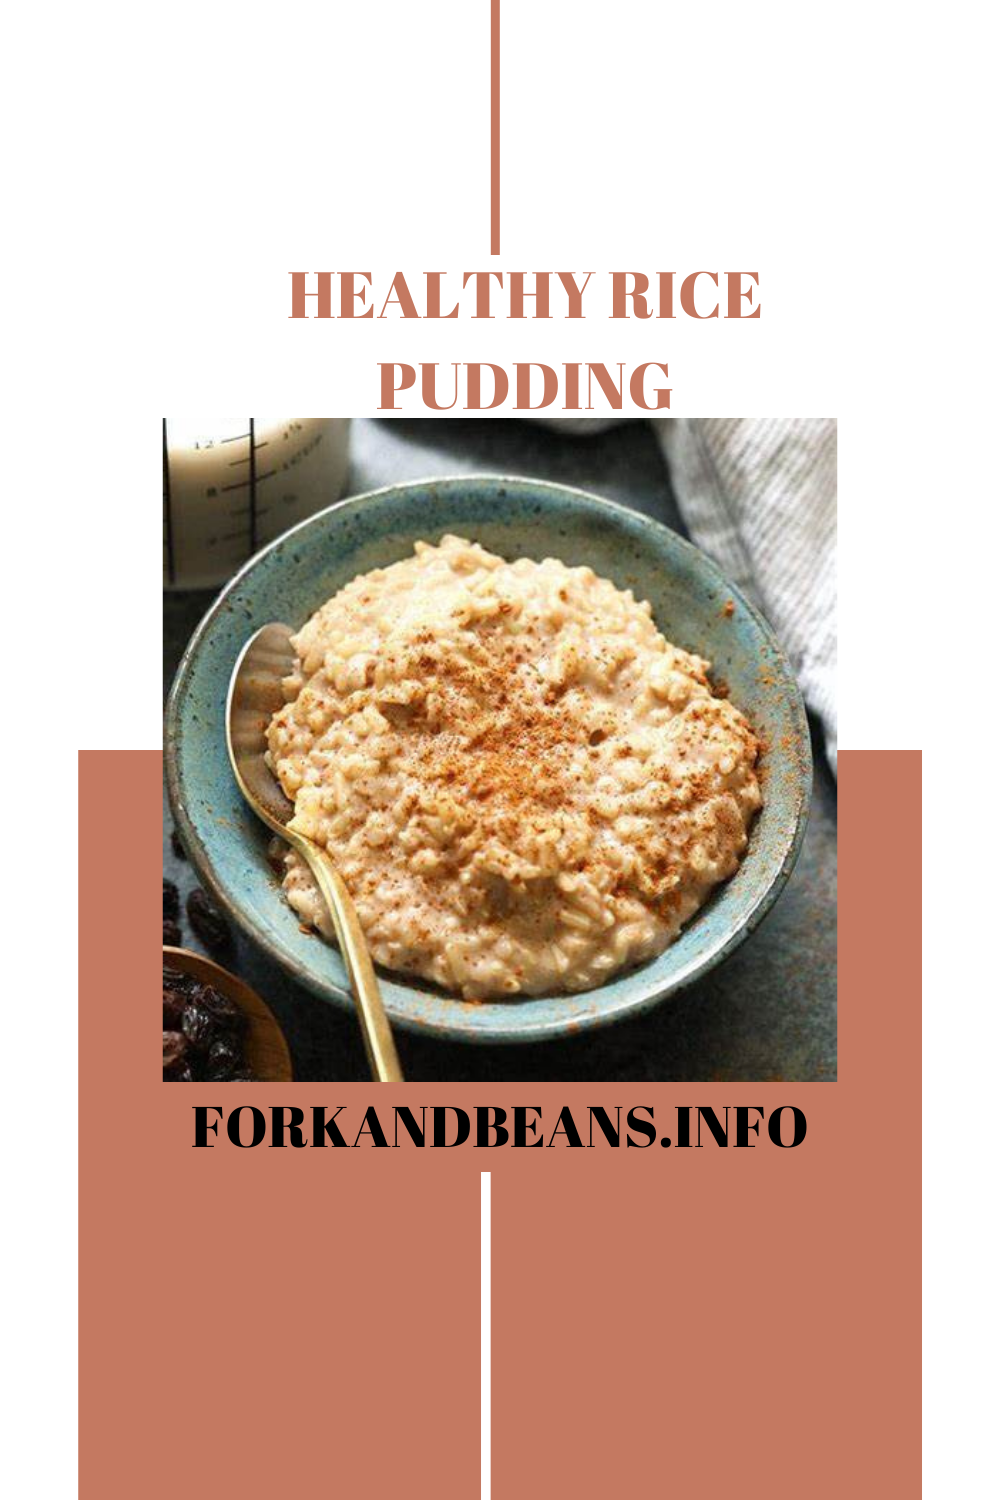 Recipe for Simple Vegan Rice Pudding